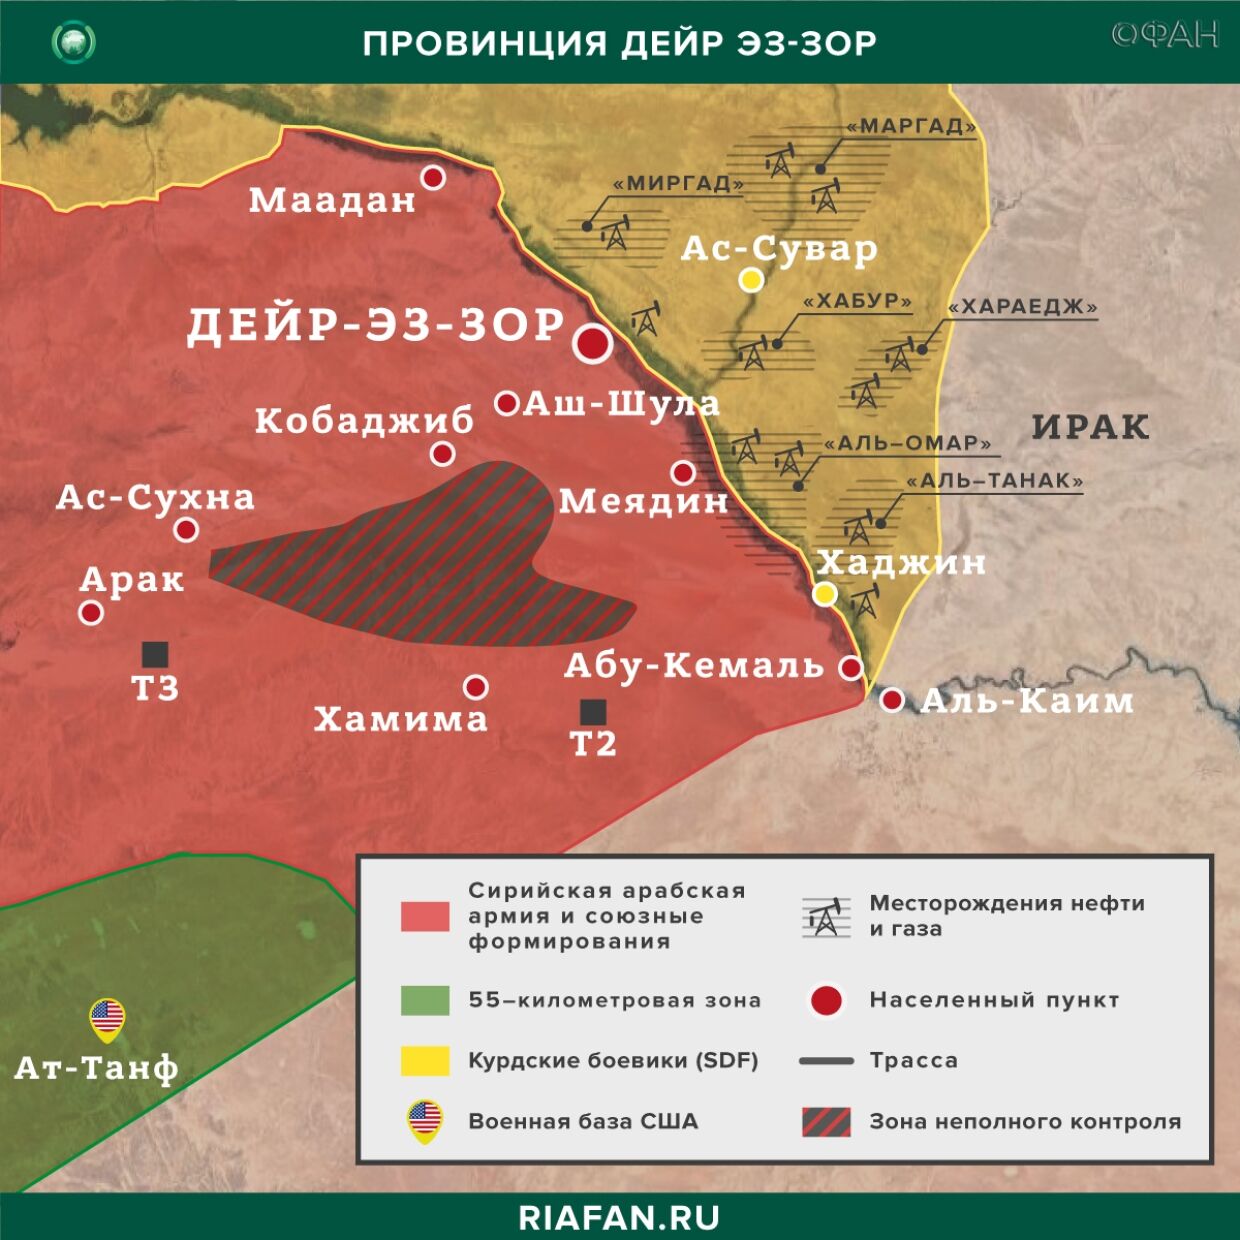 Nouvelles de Syrie 22 Mars 19.30: ХТШ пополняет ряды в Идлибе, курдские боевики провели рейды в Дейр-эз-Зоре